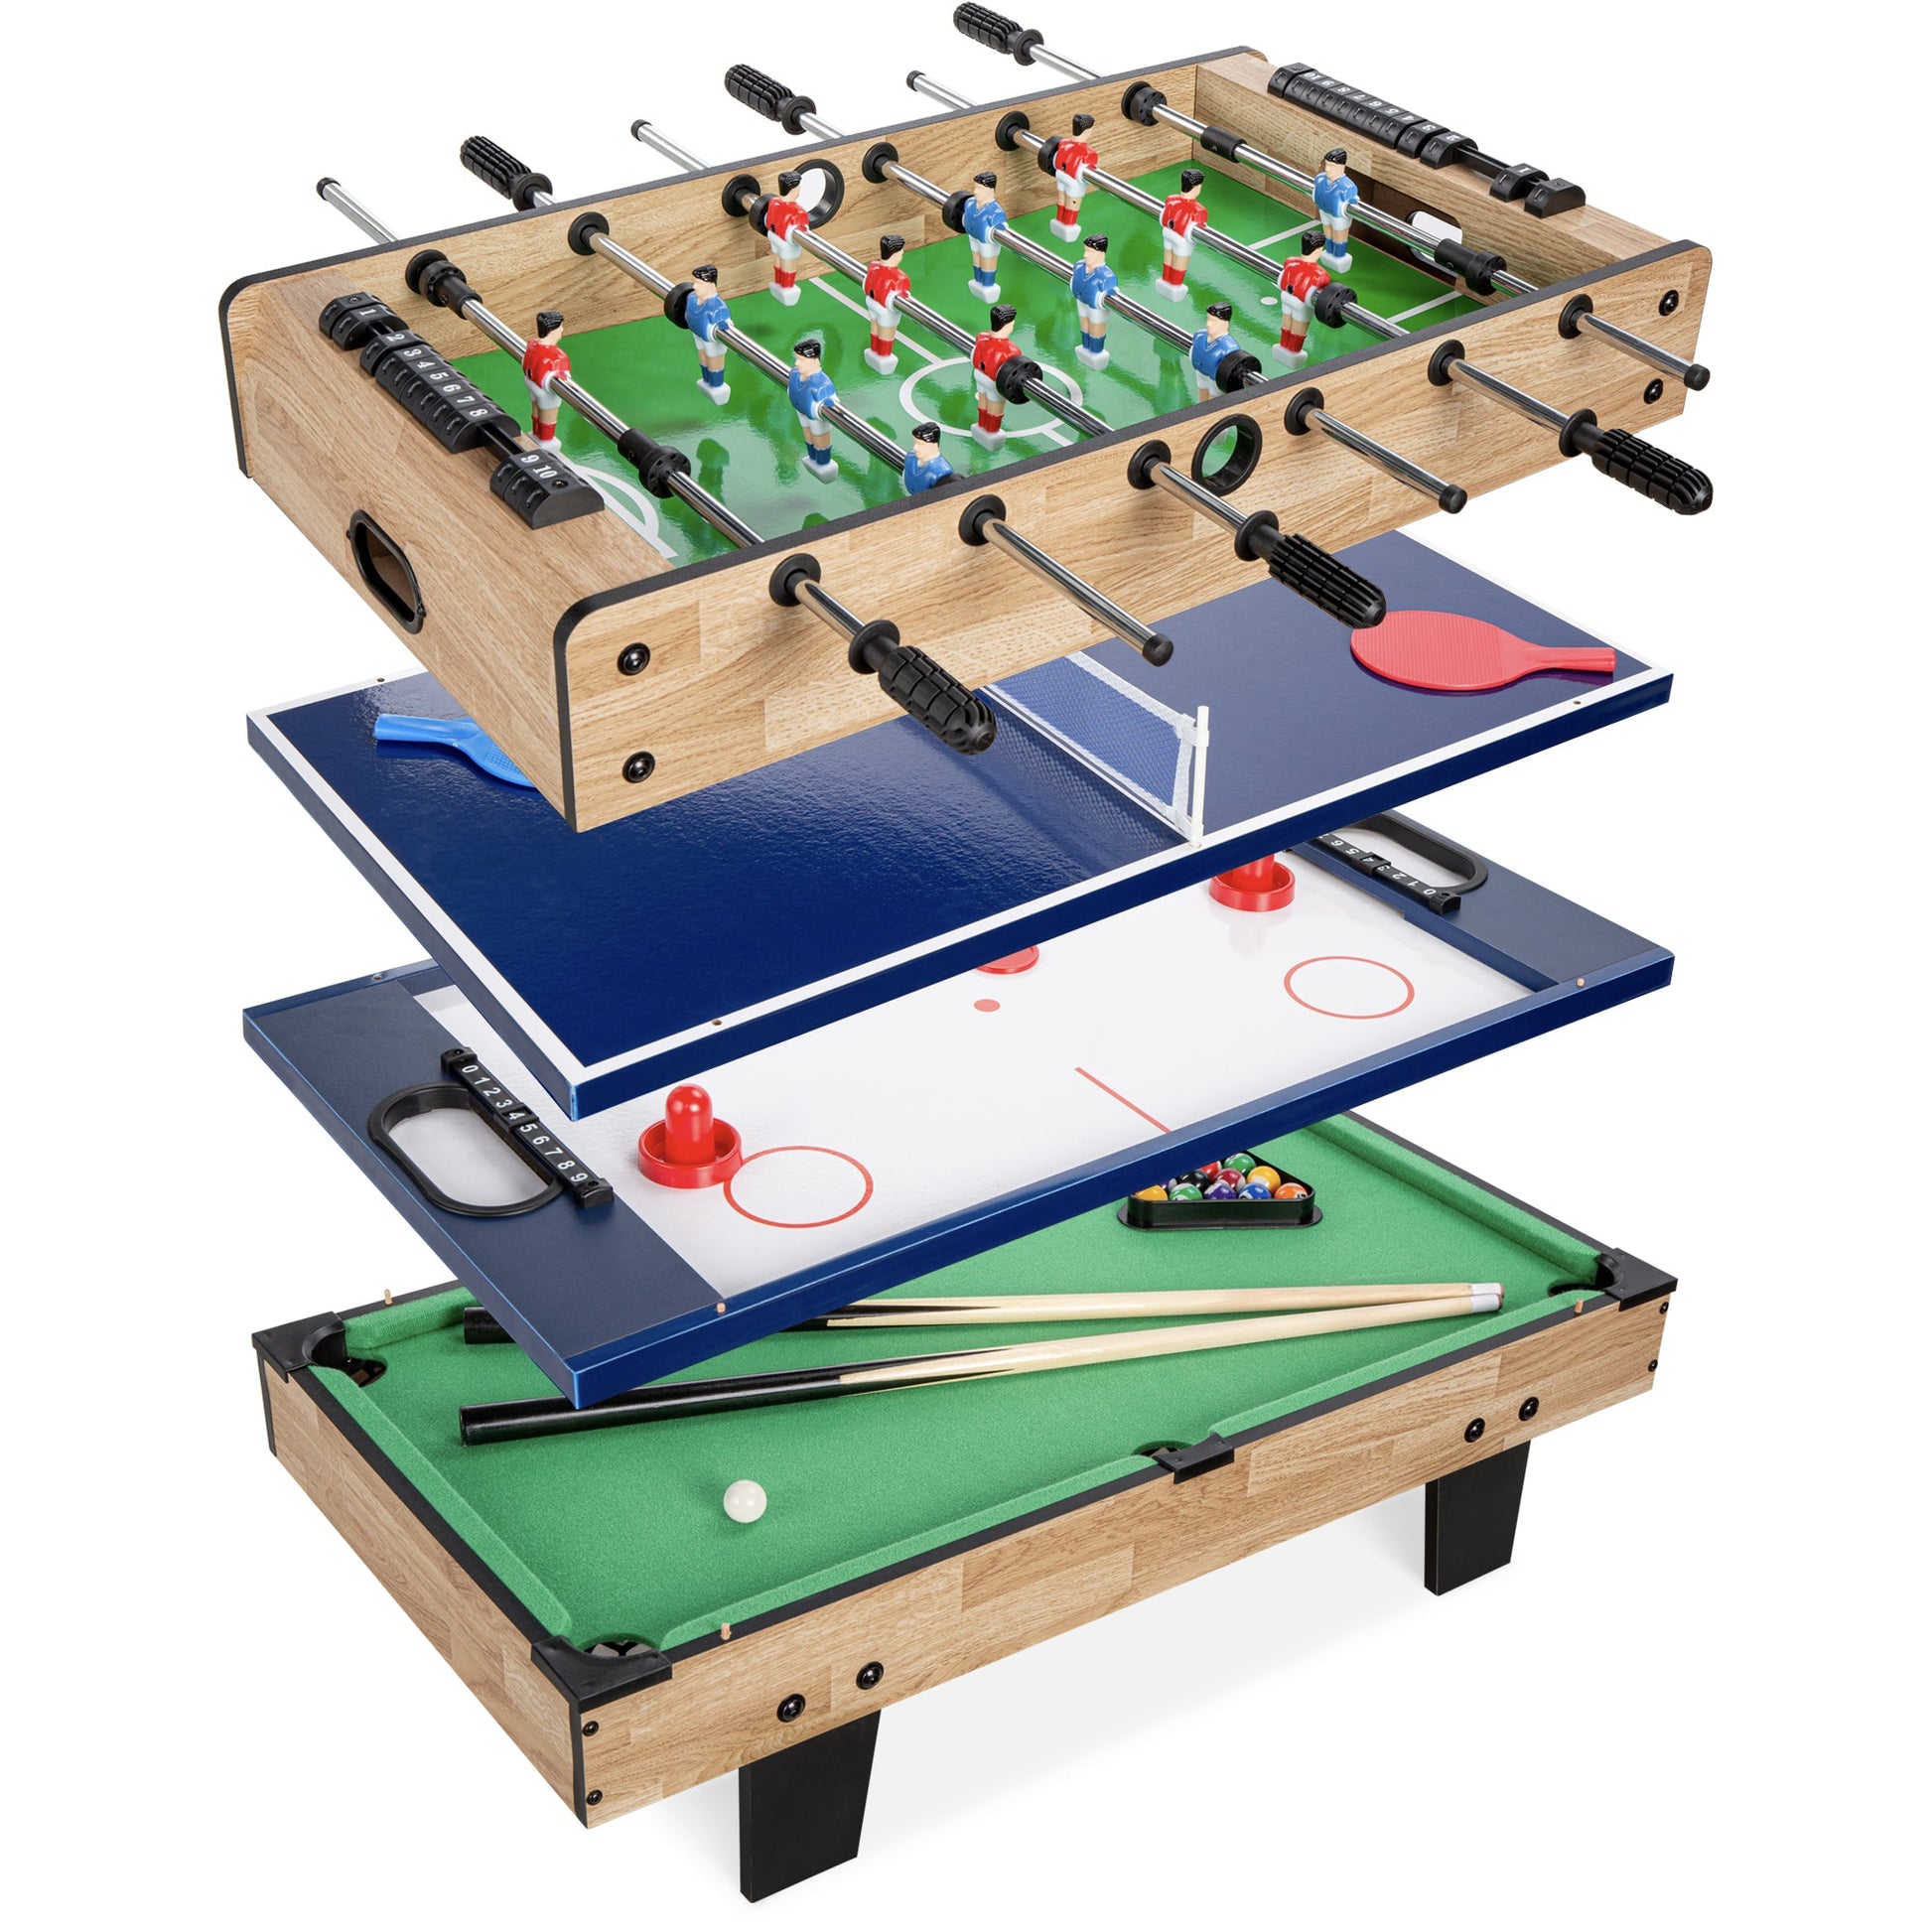 4-in-1 Multi Game Table Set w/ Air Hockey, Table Tennis, Billiards, Foosball